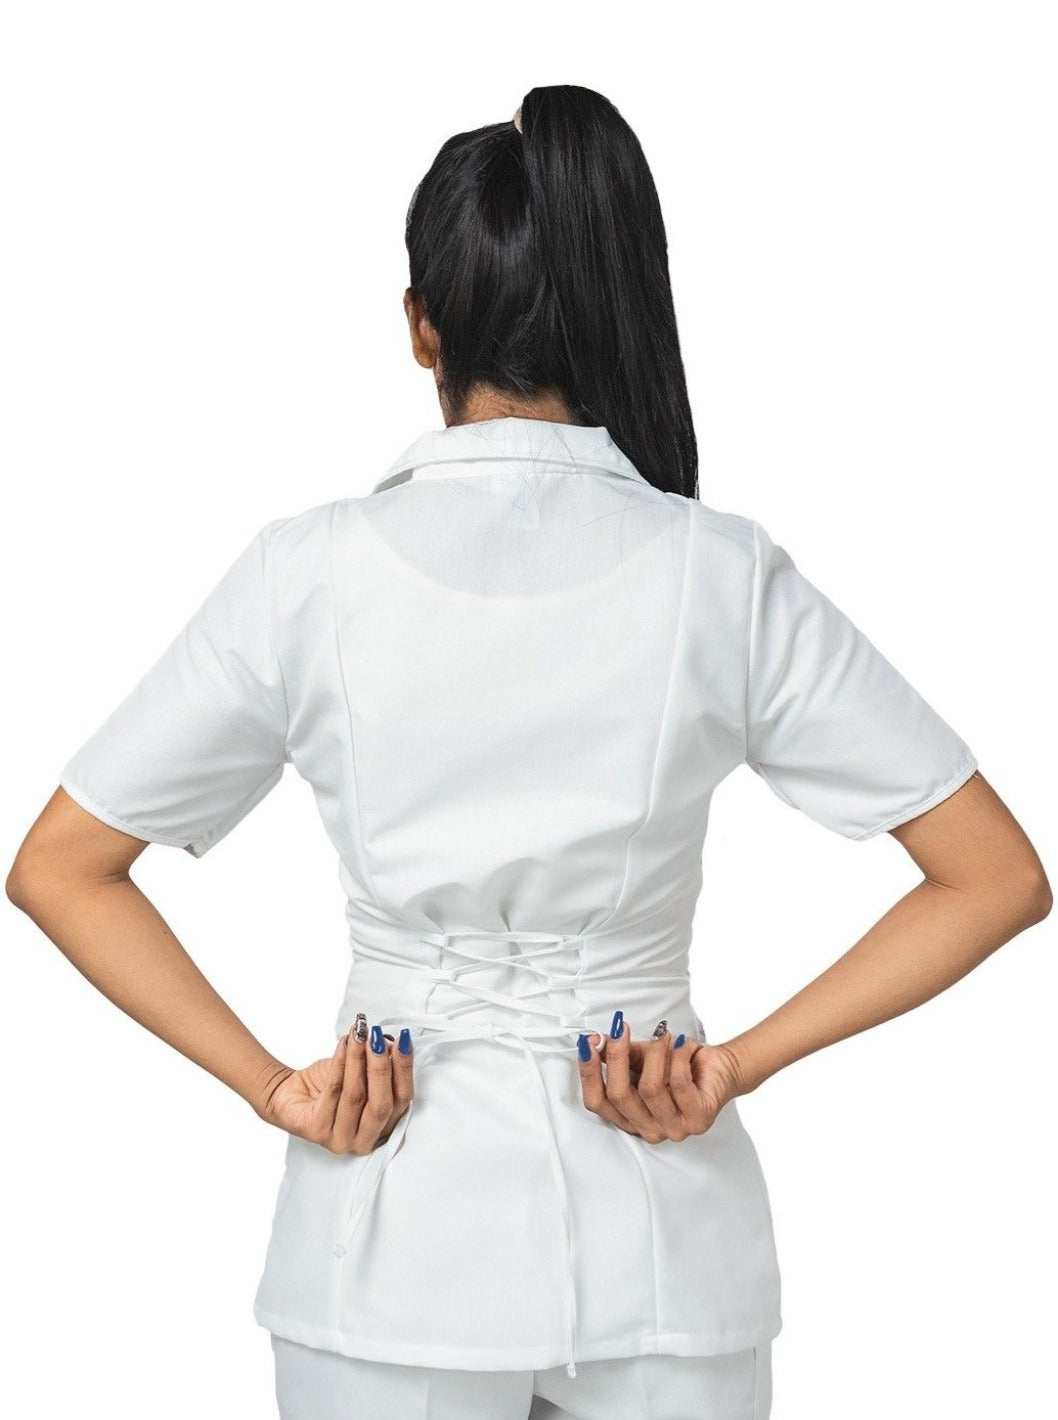 Joven de espaldas utilizando filipina médica blanca de manga corta con cierre y corsé en la espalda